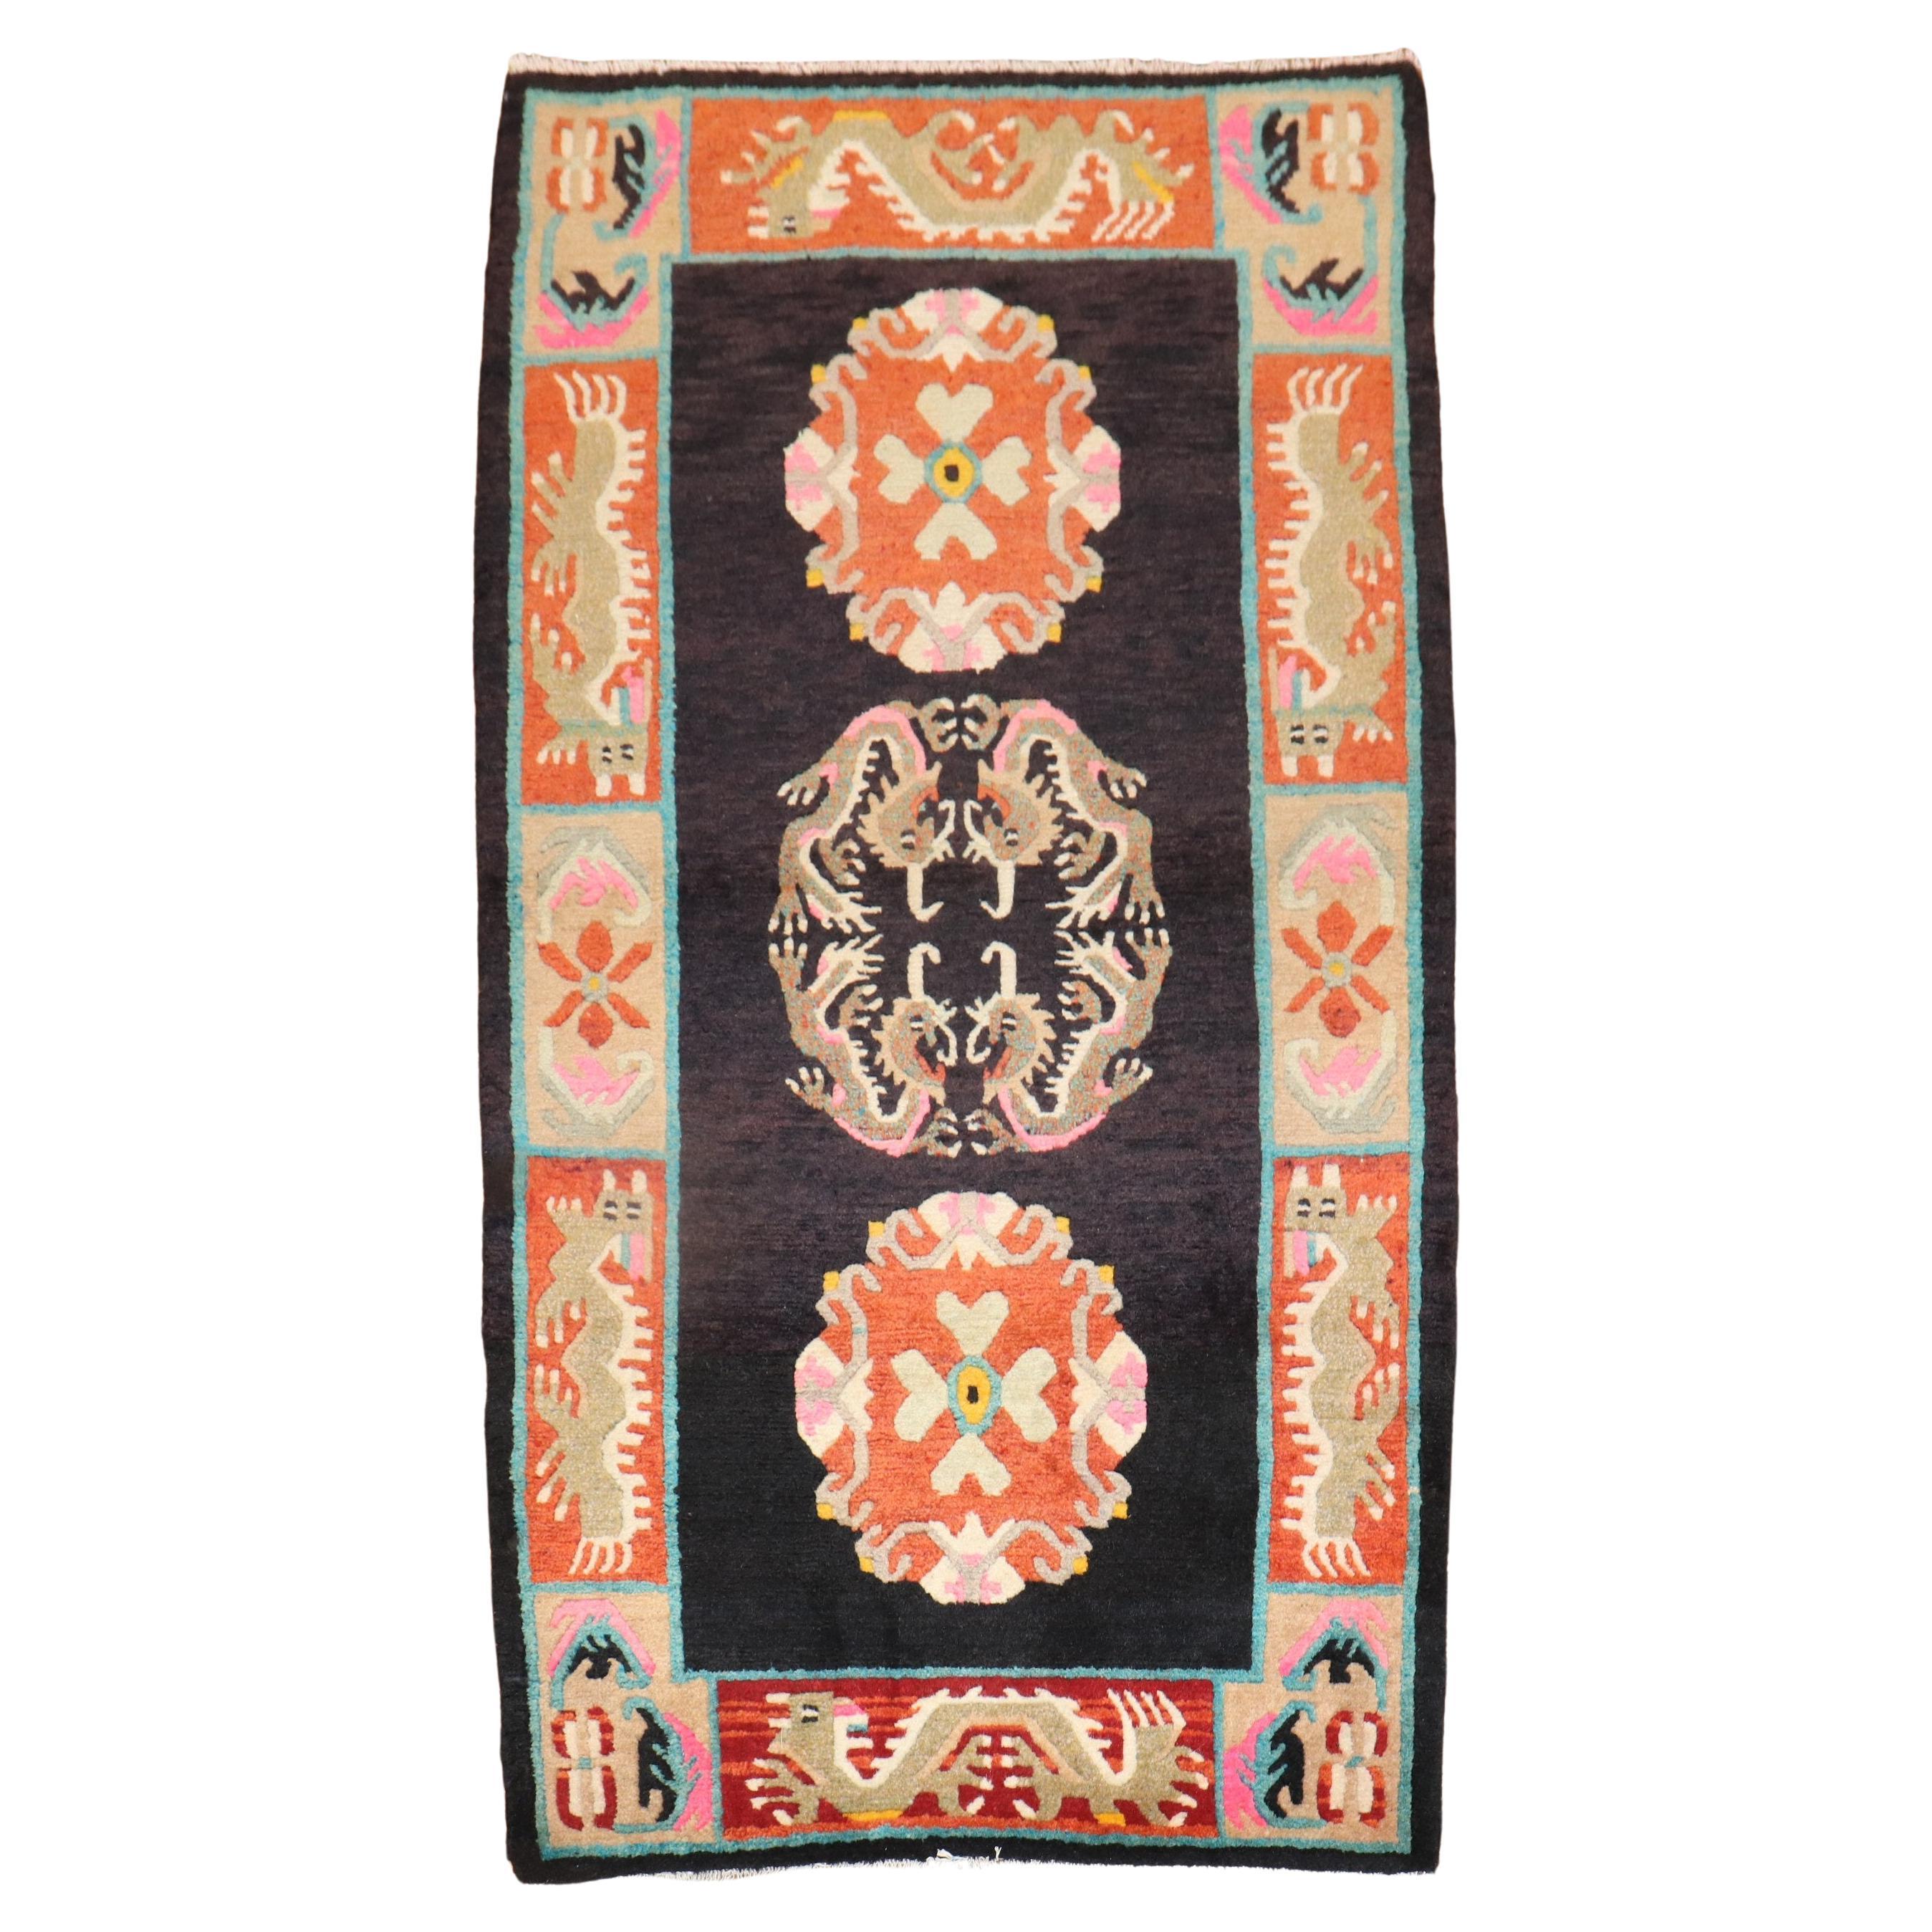 Bunter tibetischer Vintage-Teppich